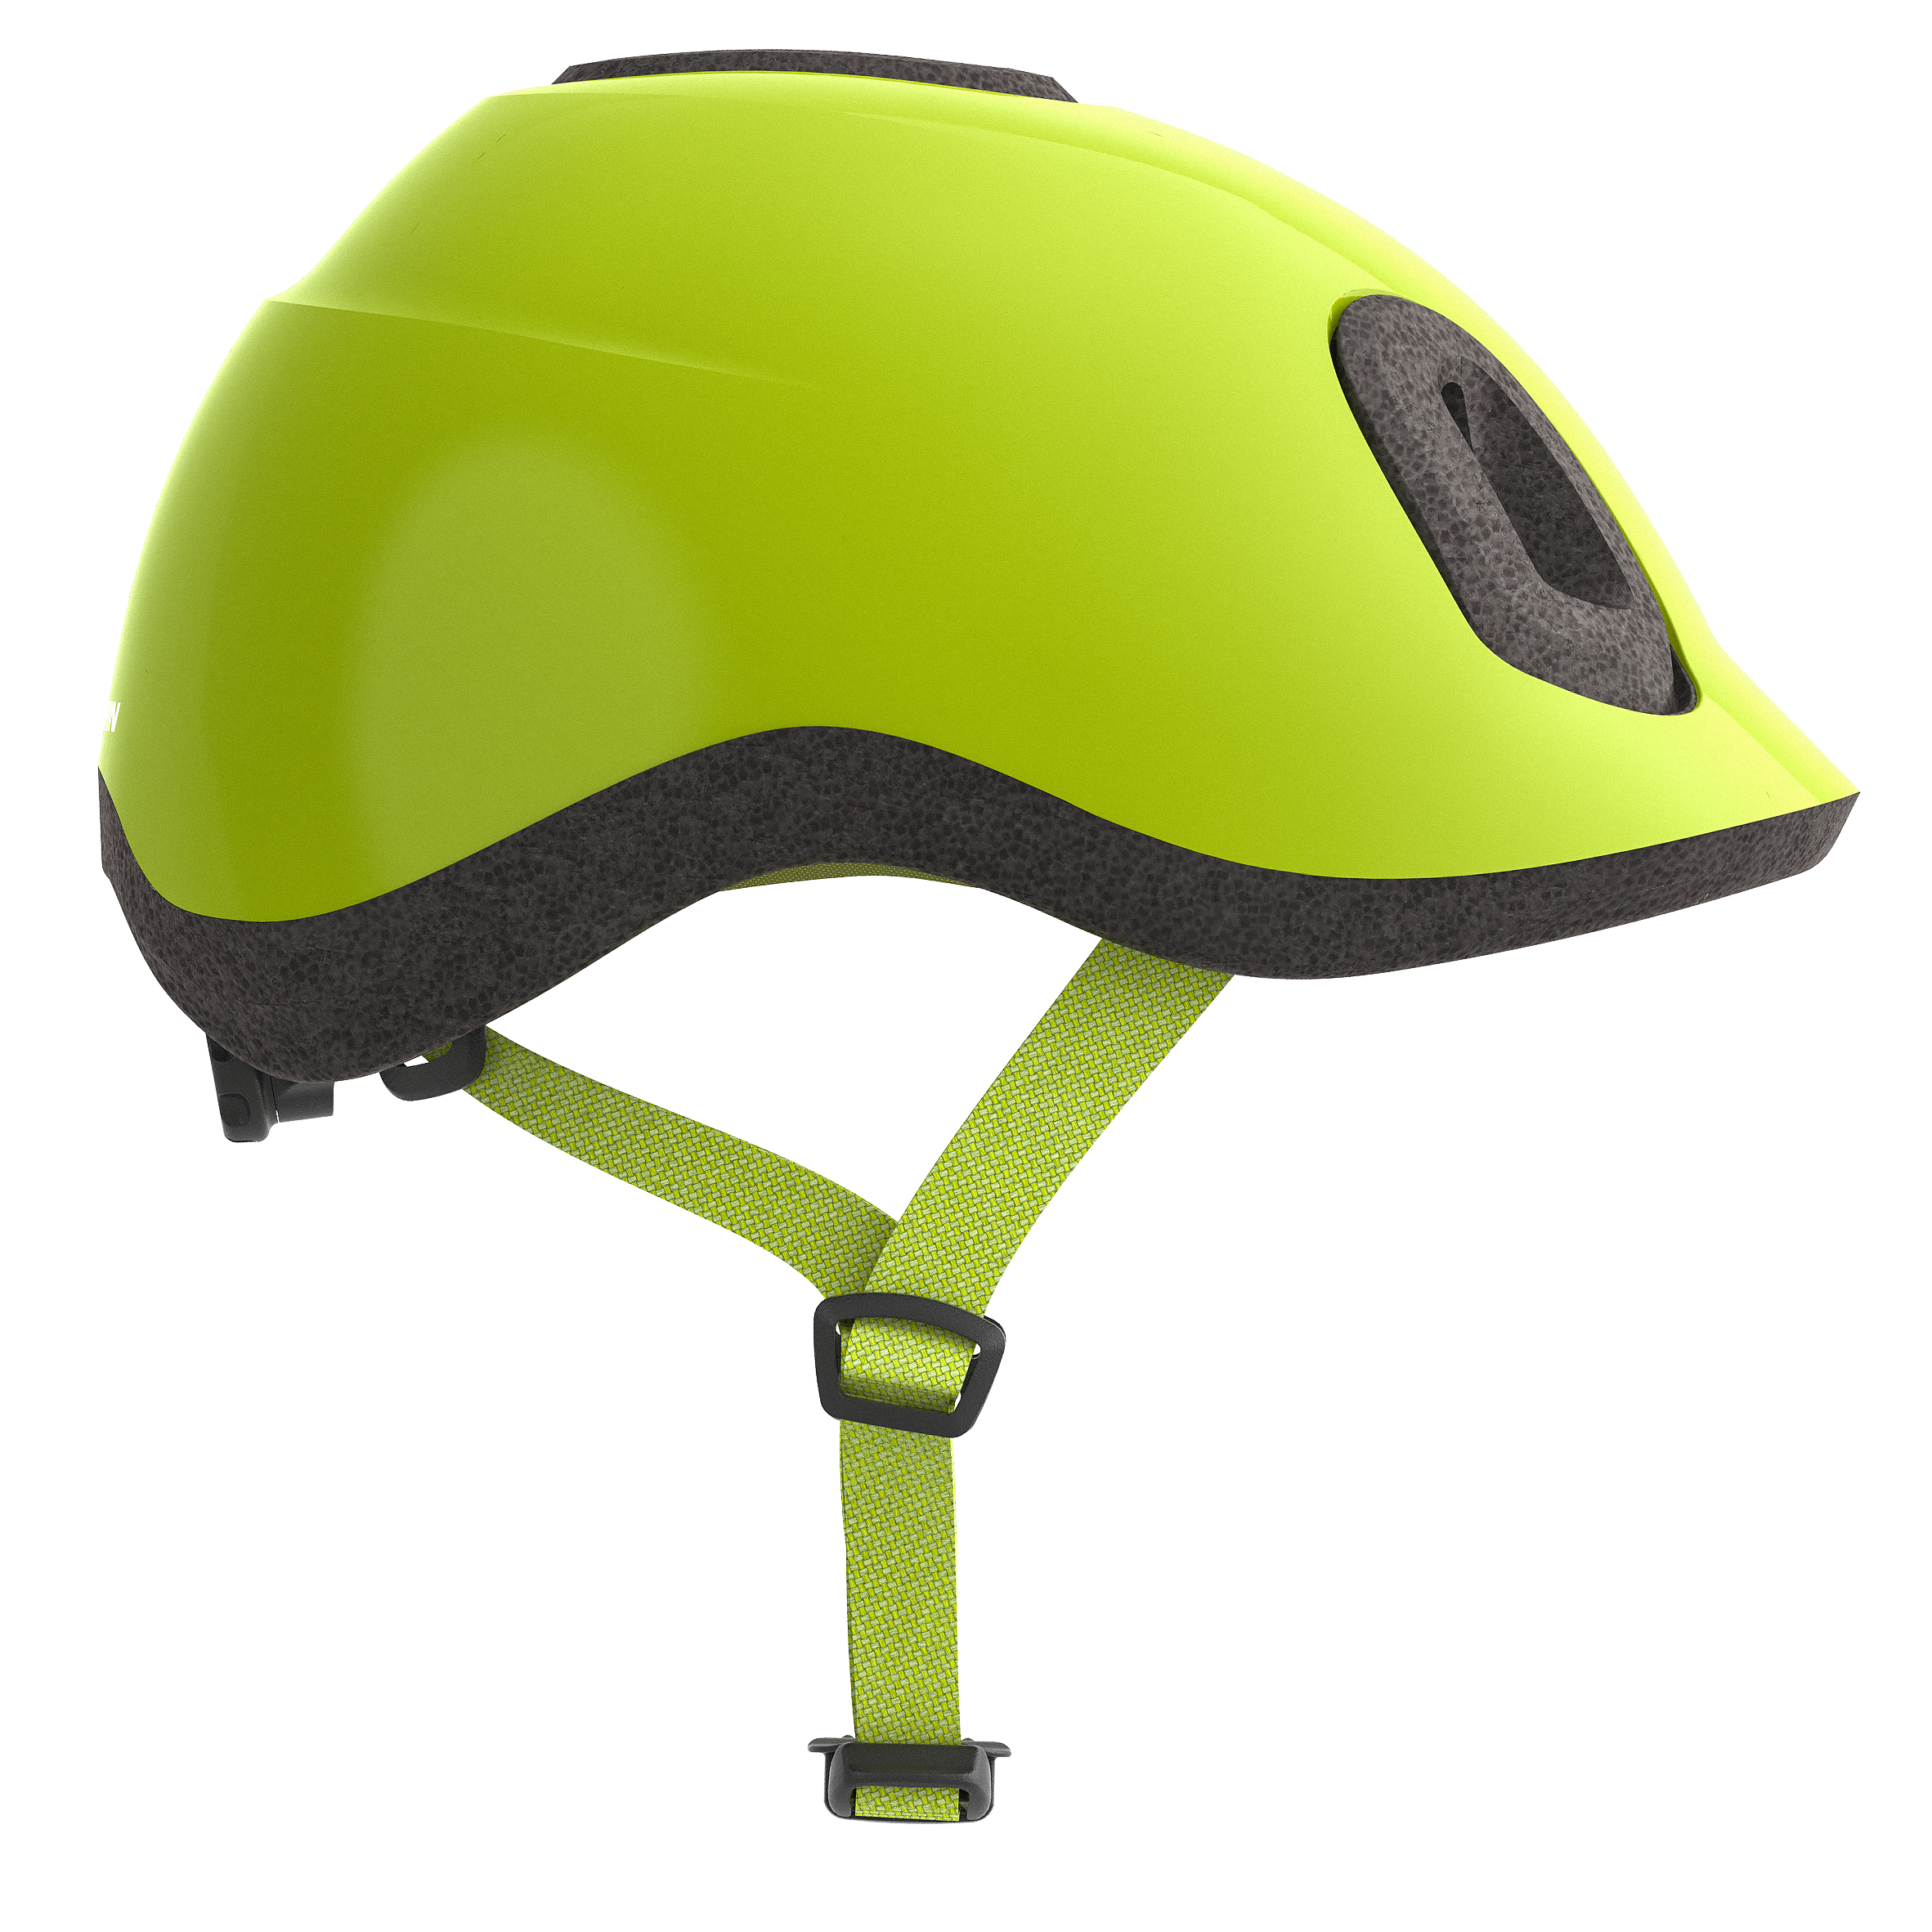 BTWIN  Helm - 500 